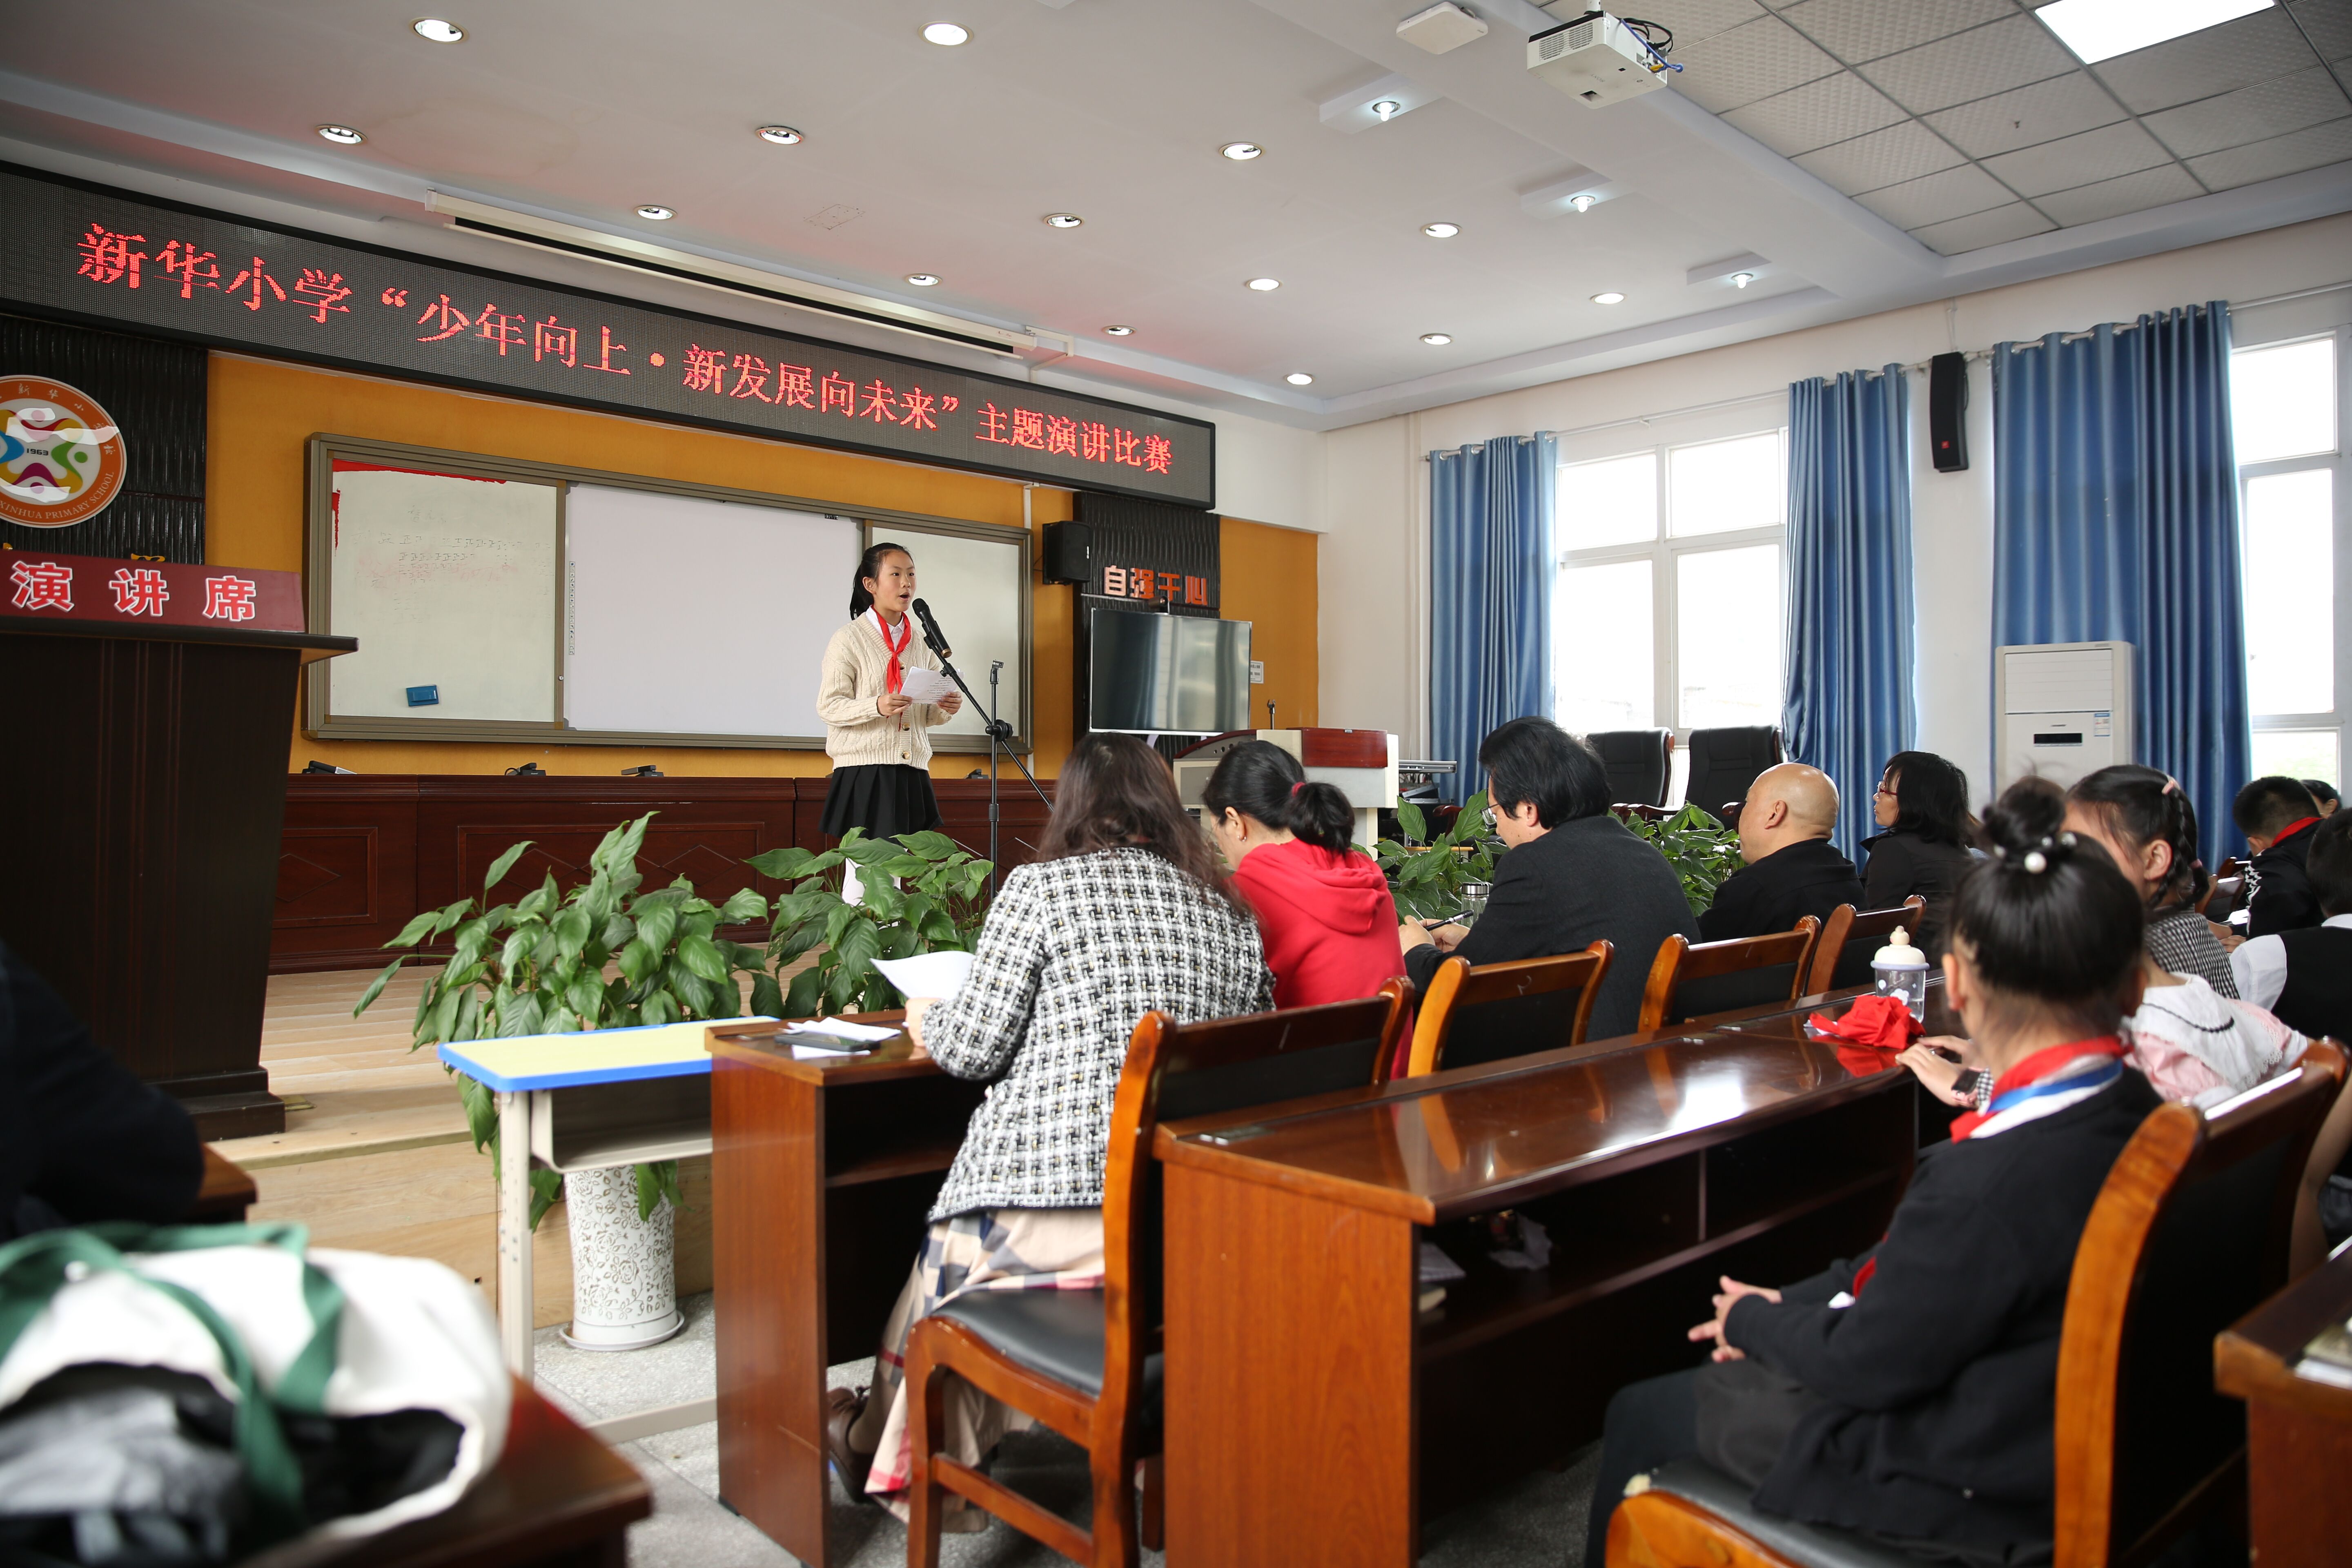 黔江区新华小学校开展“少年向上•新发展向未来”演讲、朗诵比赛